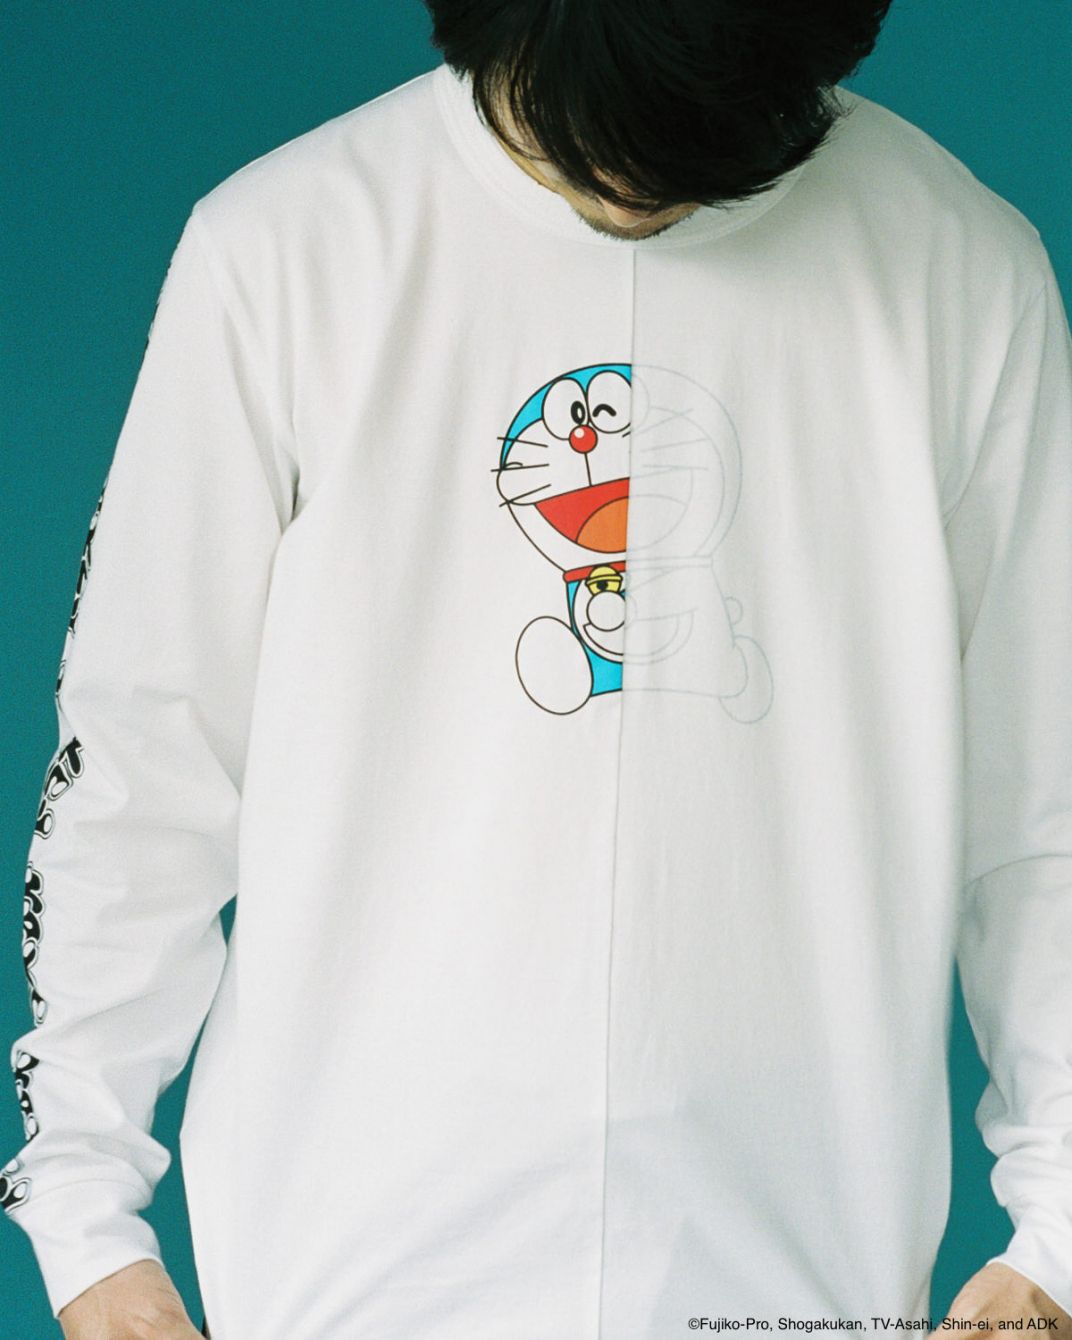 # 日本實驗服飾品牌 ALOYE × 國民動畫 哆啦 A 夢：推出異次元跨越聯名系列。 3